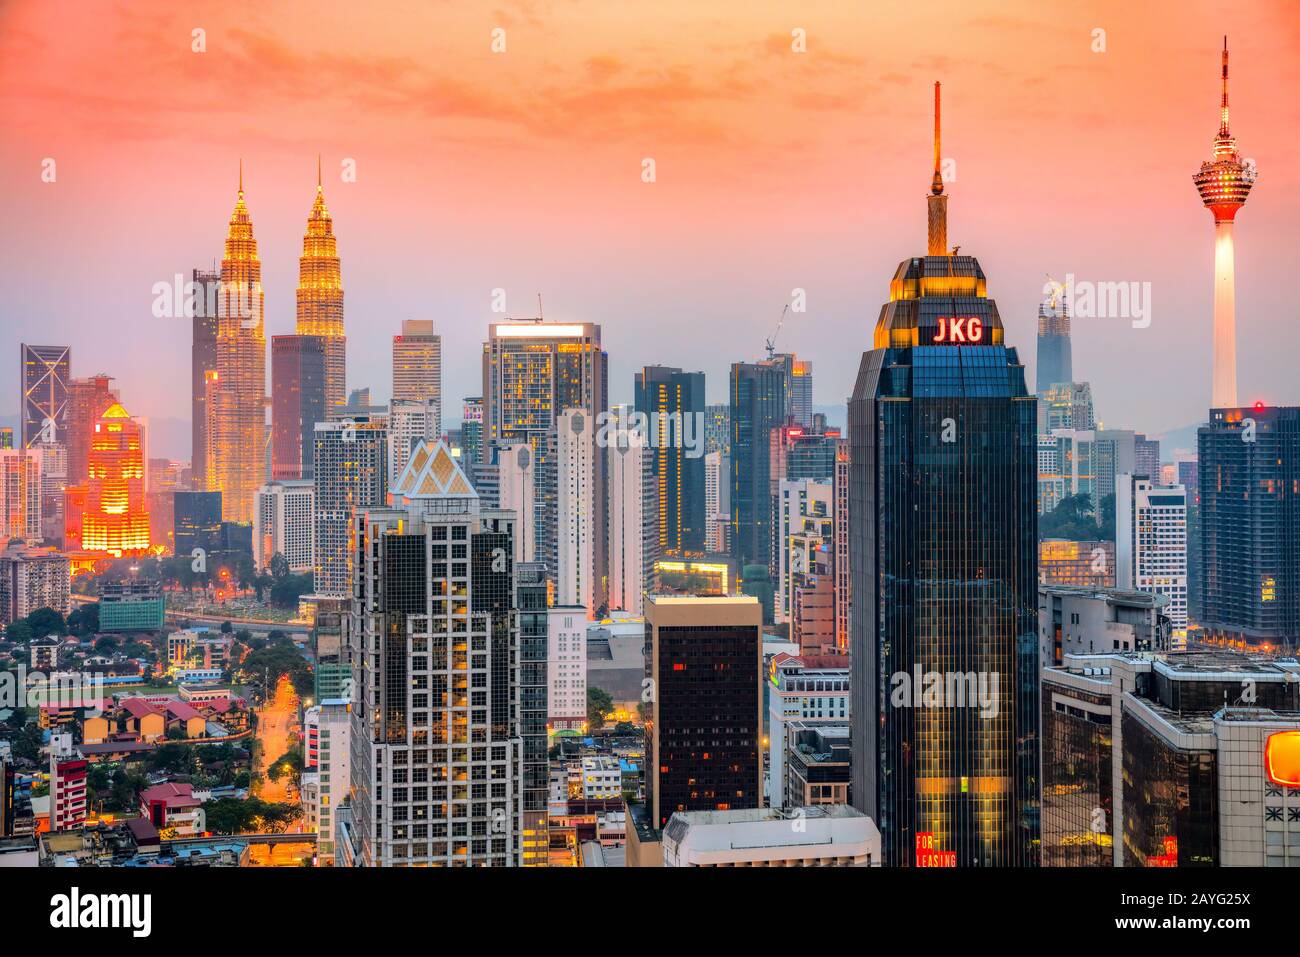 Horizon de la ville de Kuala Lumpur, avec les célèbres tours jumelles Petronas et la tour Kl. Banque D'Images